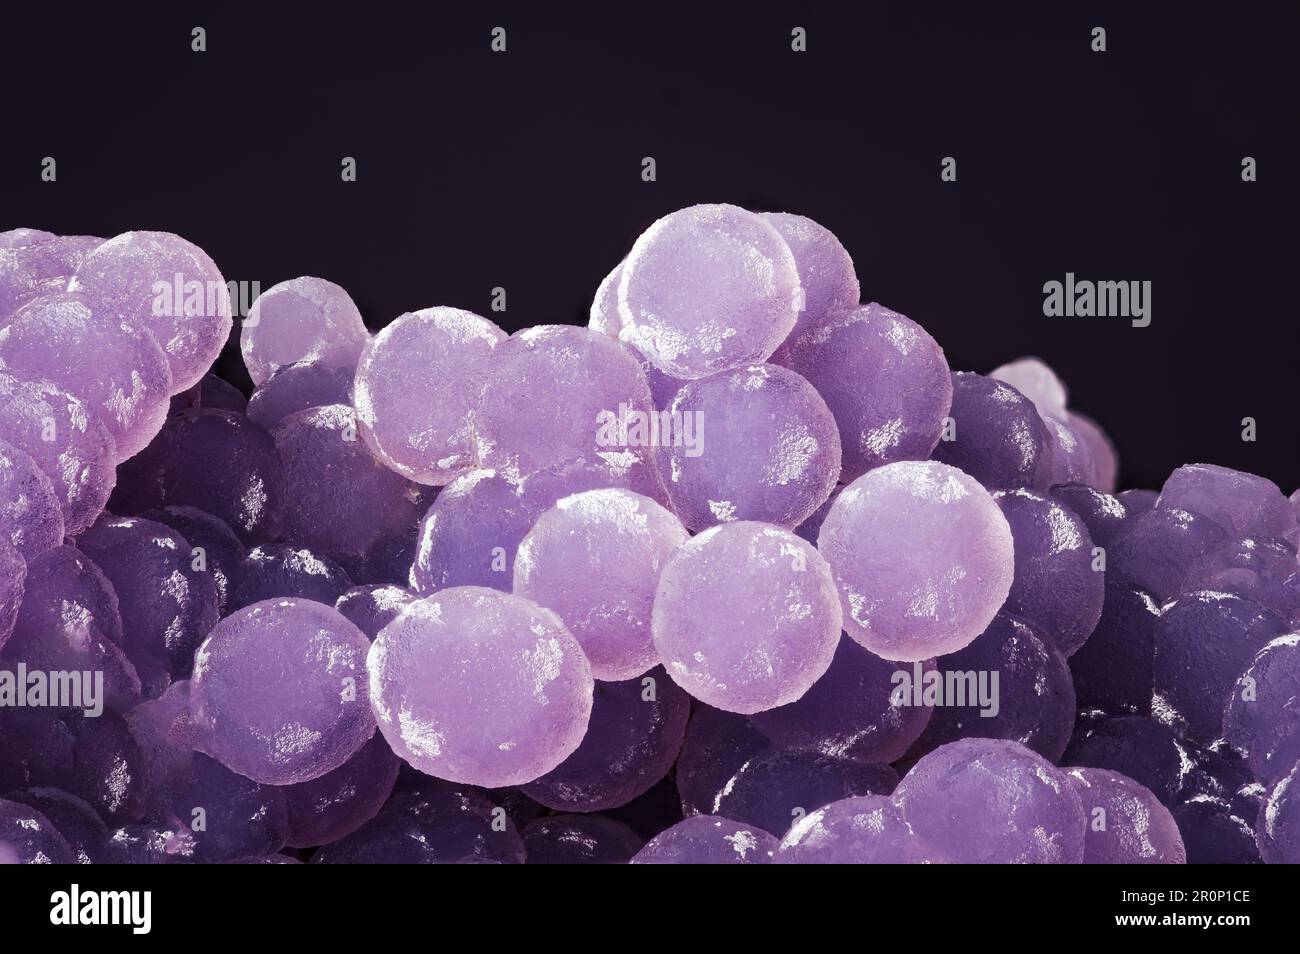 Grape Agate, violett-pinkfarbene Aggregate, Hintergrund mit Makro-Kreidedetails. Nahaufnahme von rohem, unpoliertem Halbedelstein. Stockfoto